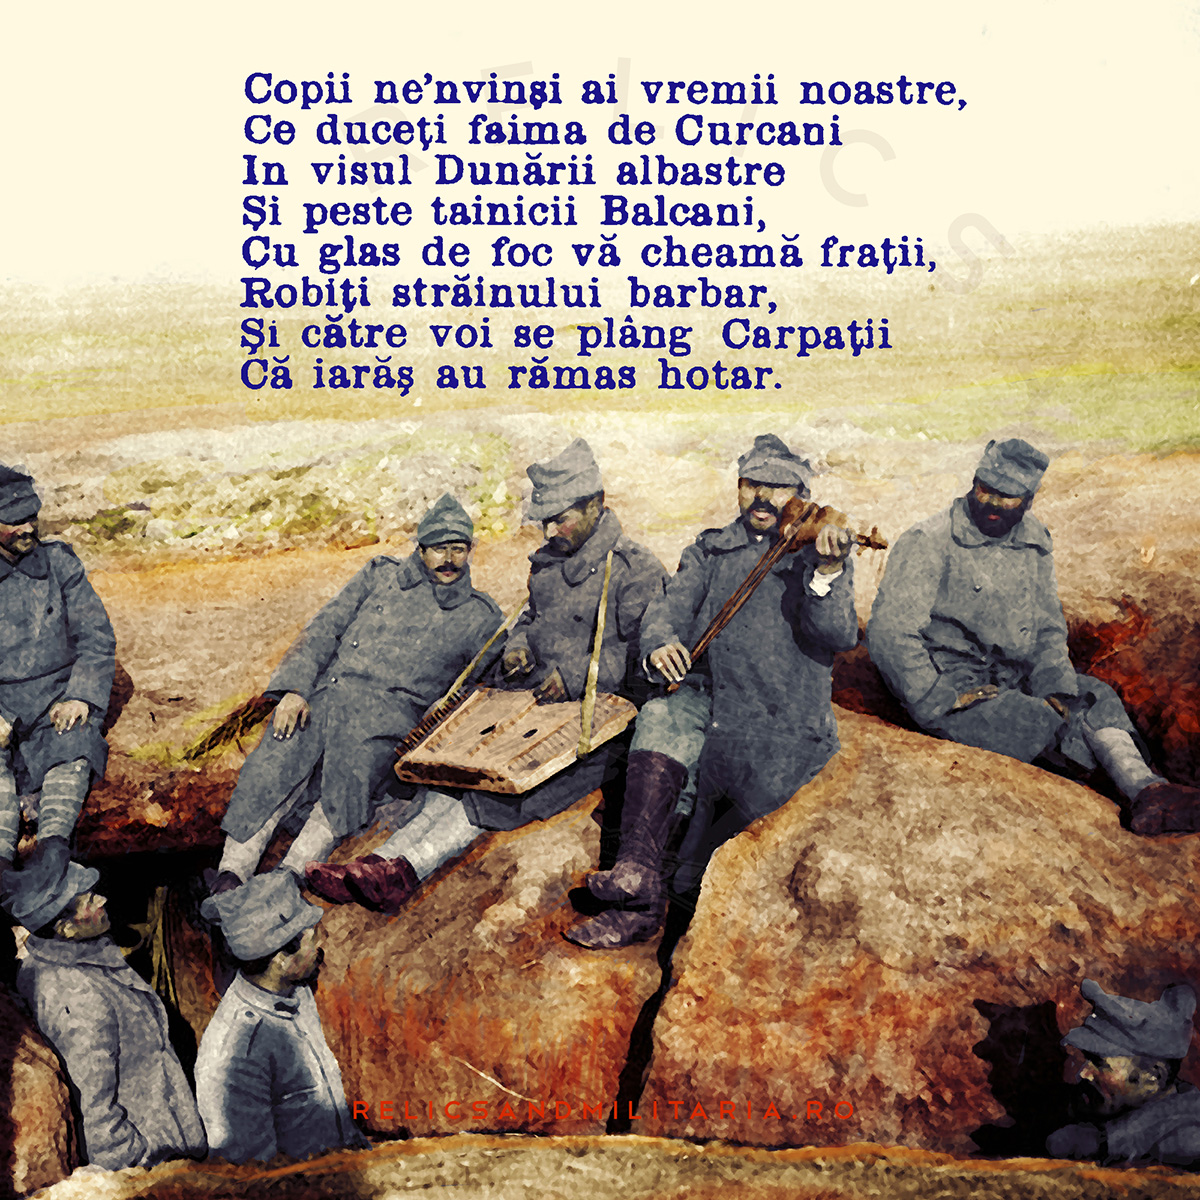 Romania in the Great War